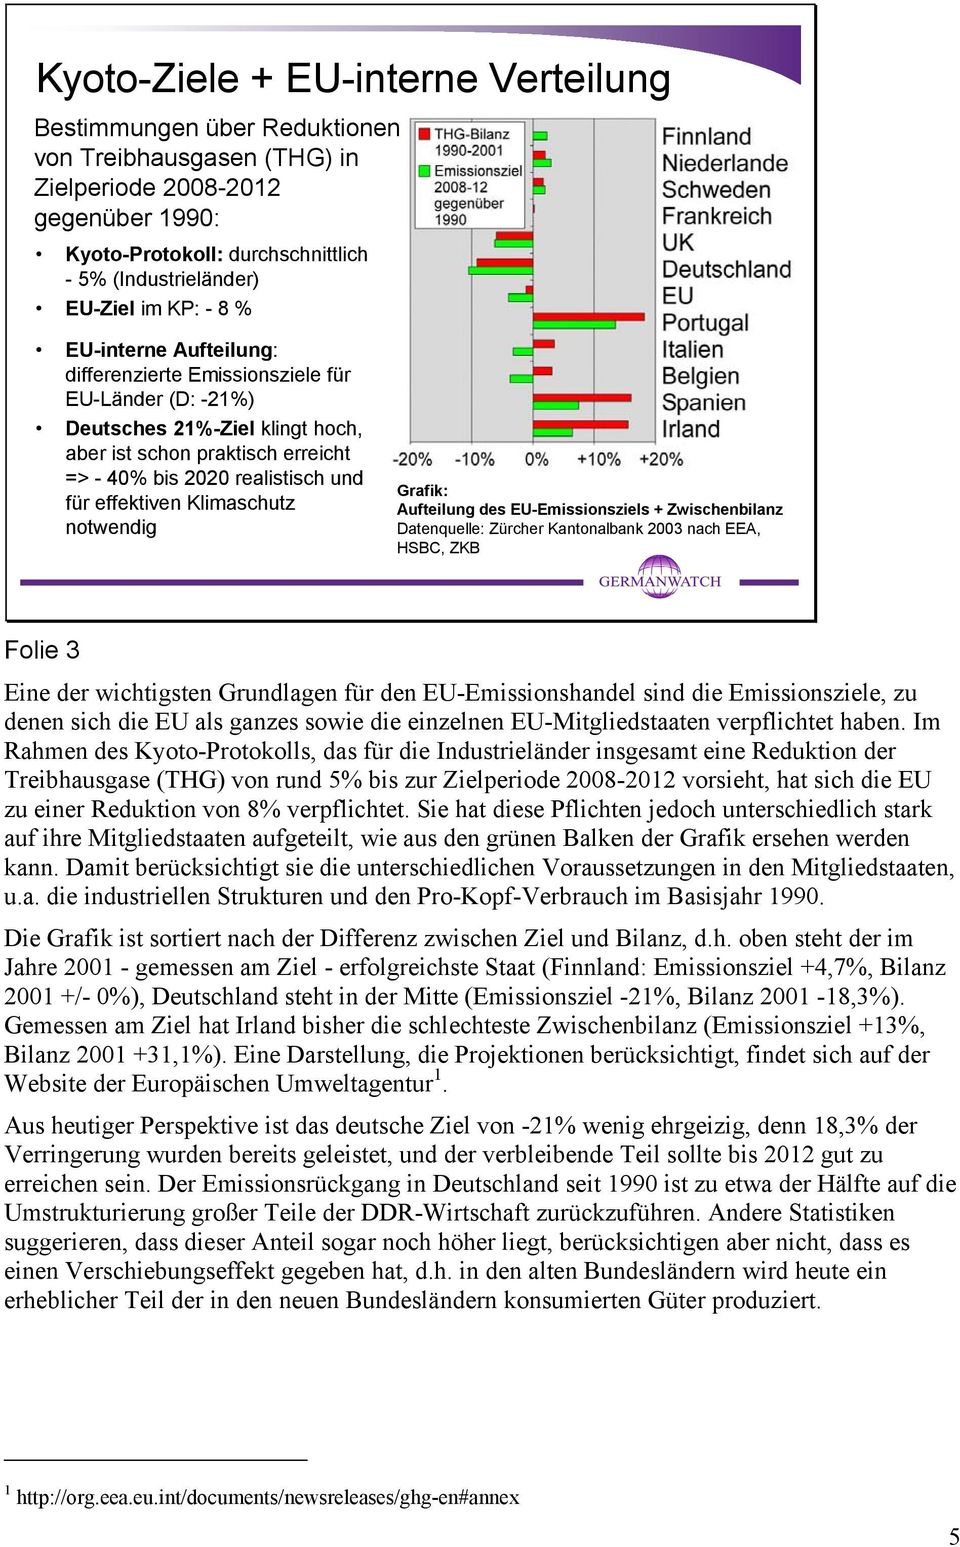 effektiven Klimaschutz notwendig Grafik: Aufteilung des EU-Emissionsziels + Zwischenbilanz Datenquelle: Zürcher Kantonalbank 2003 nach EEA, HSBC, ZKB Folie 3 Eine der wichtigsten Grundlagen für den